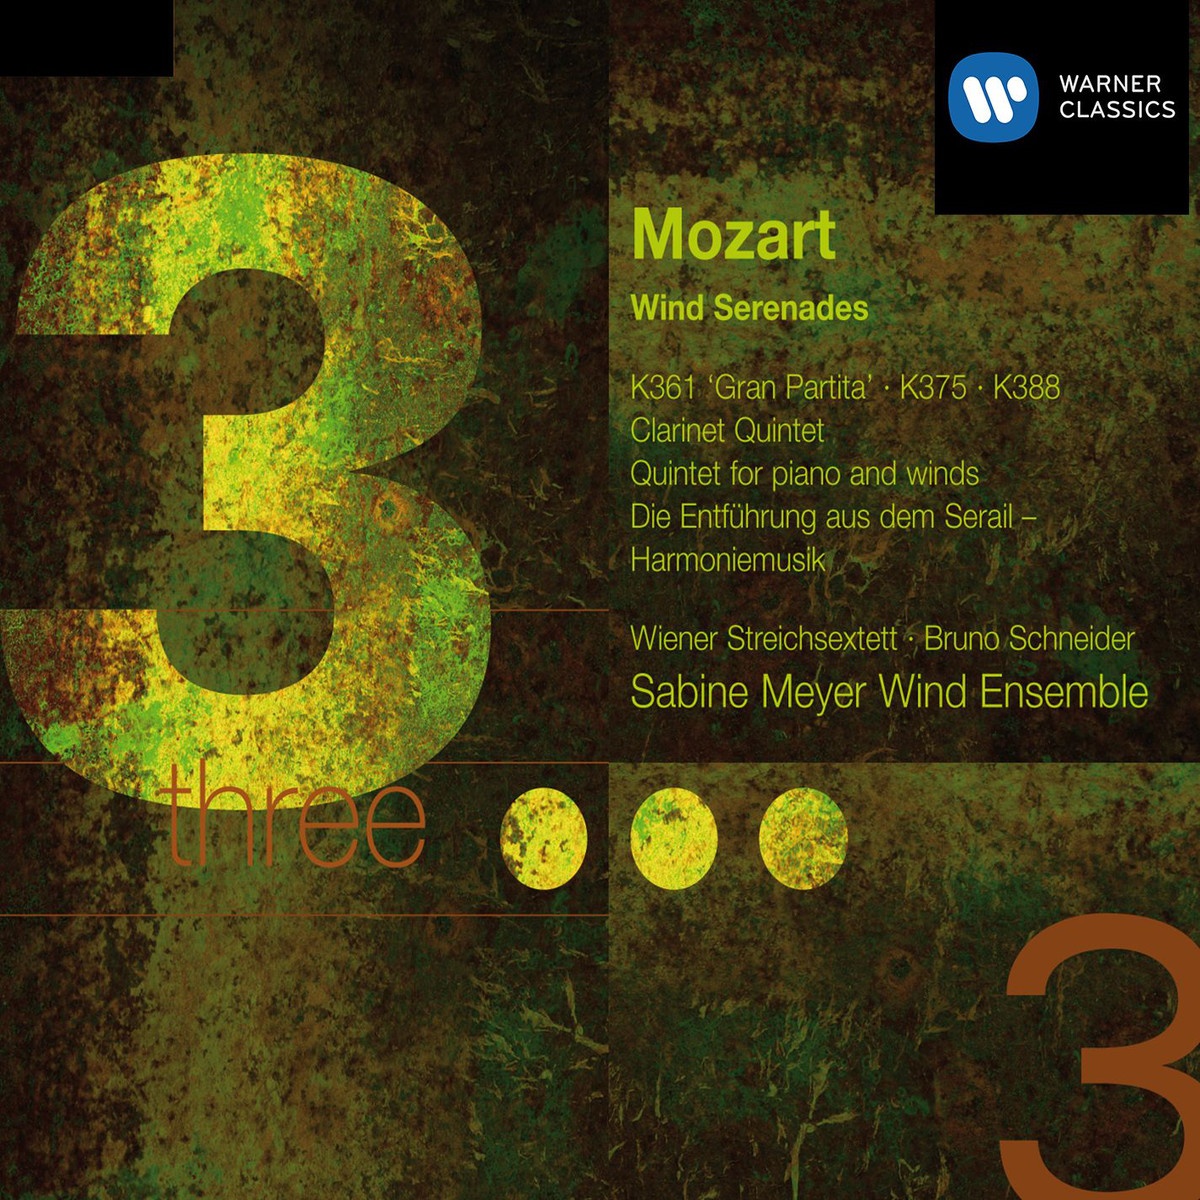 Serenade Nr.10 B-dur KV 361(370a) "Gran Partita": IV.  Menuetto (Allegretto) - Trio I - Menuetto da capo - Trio II - Menuetto da